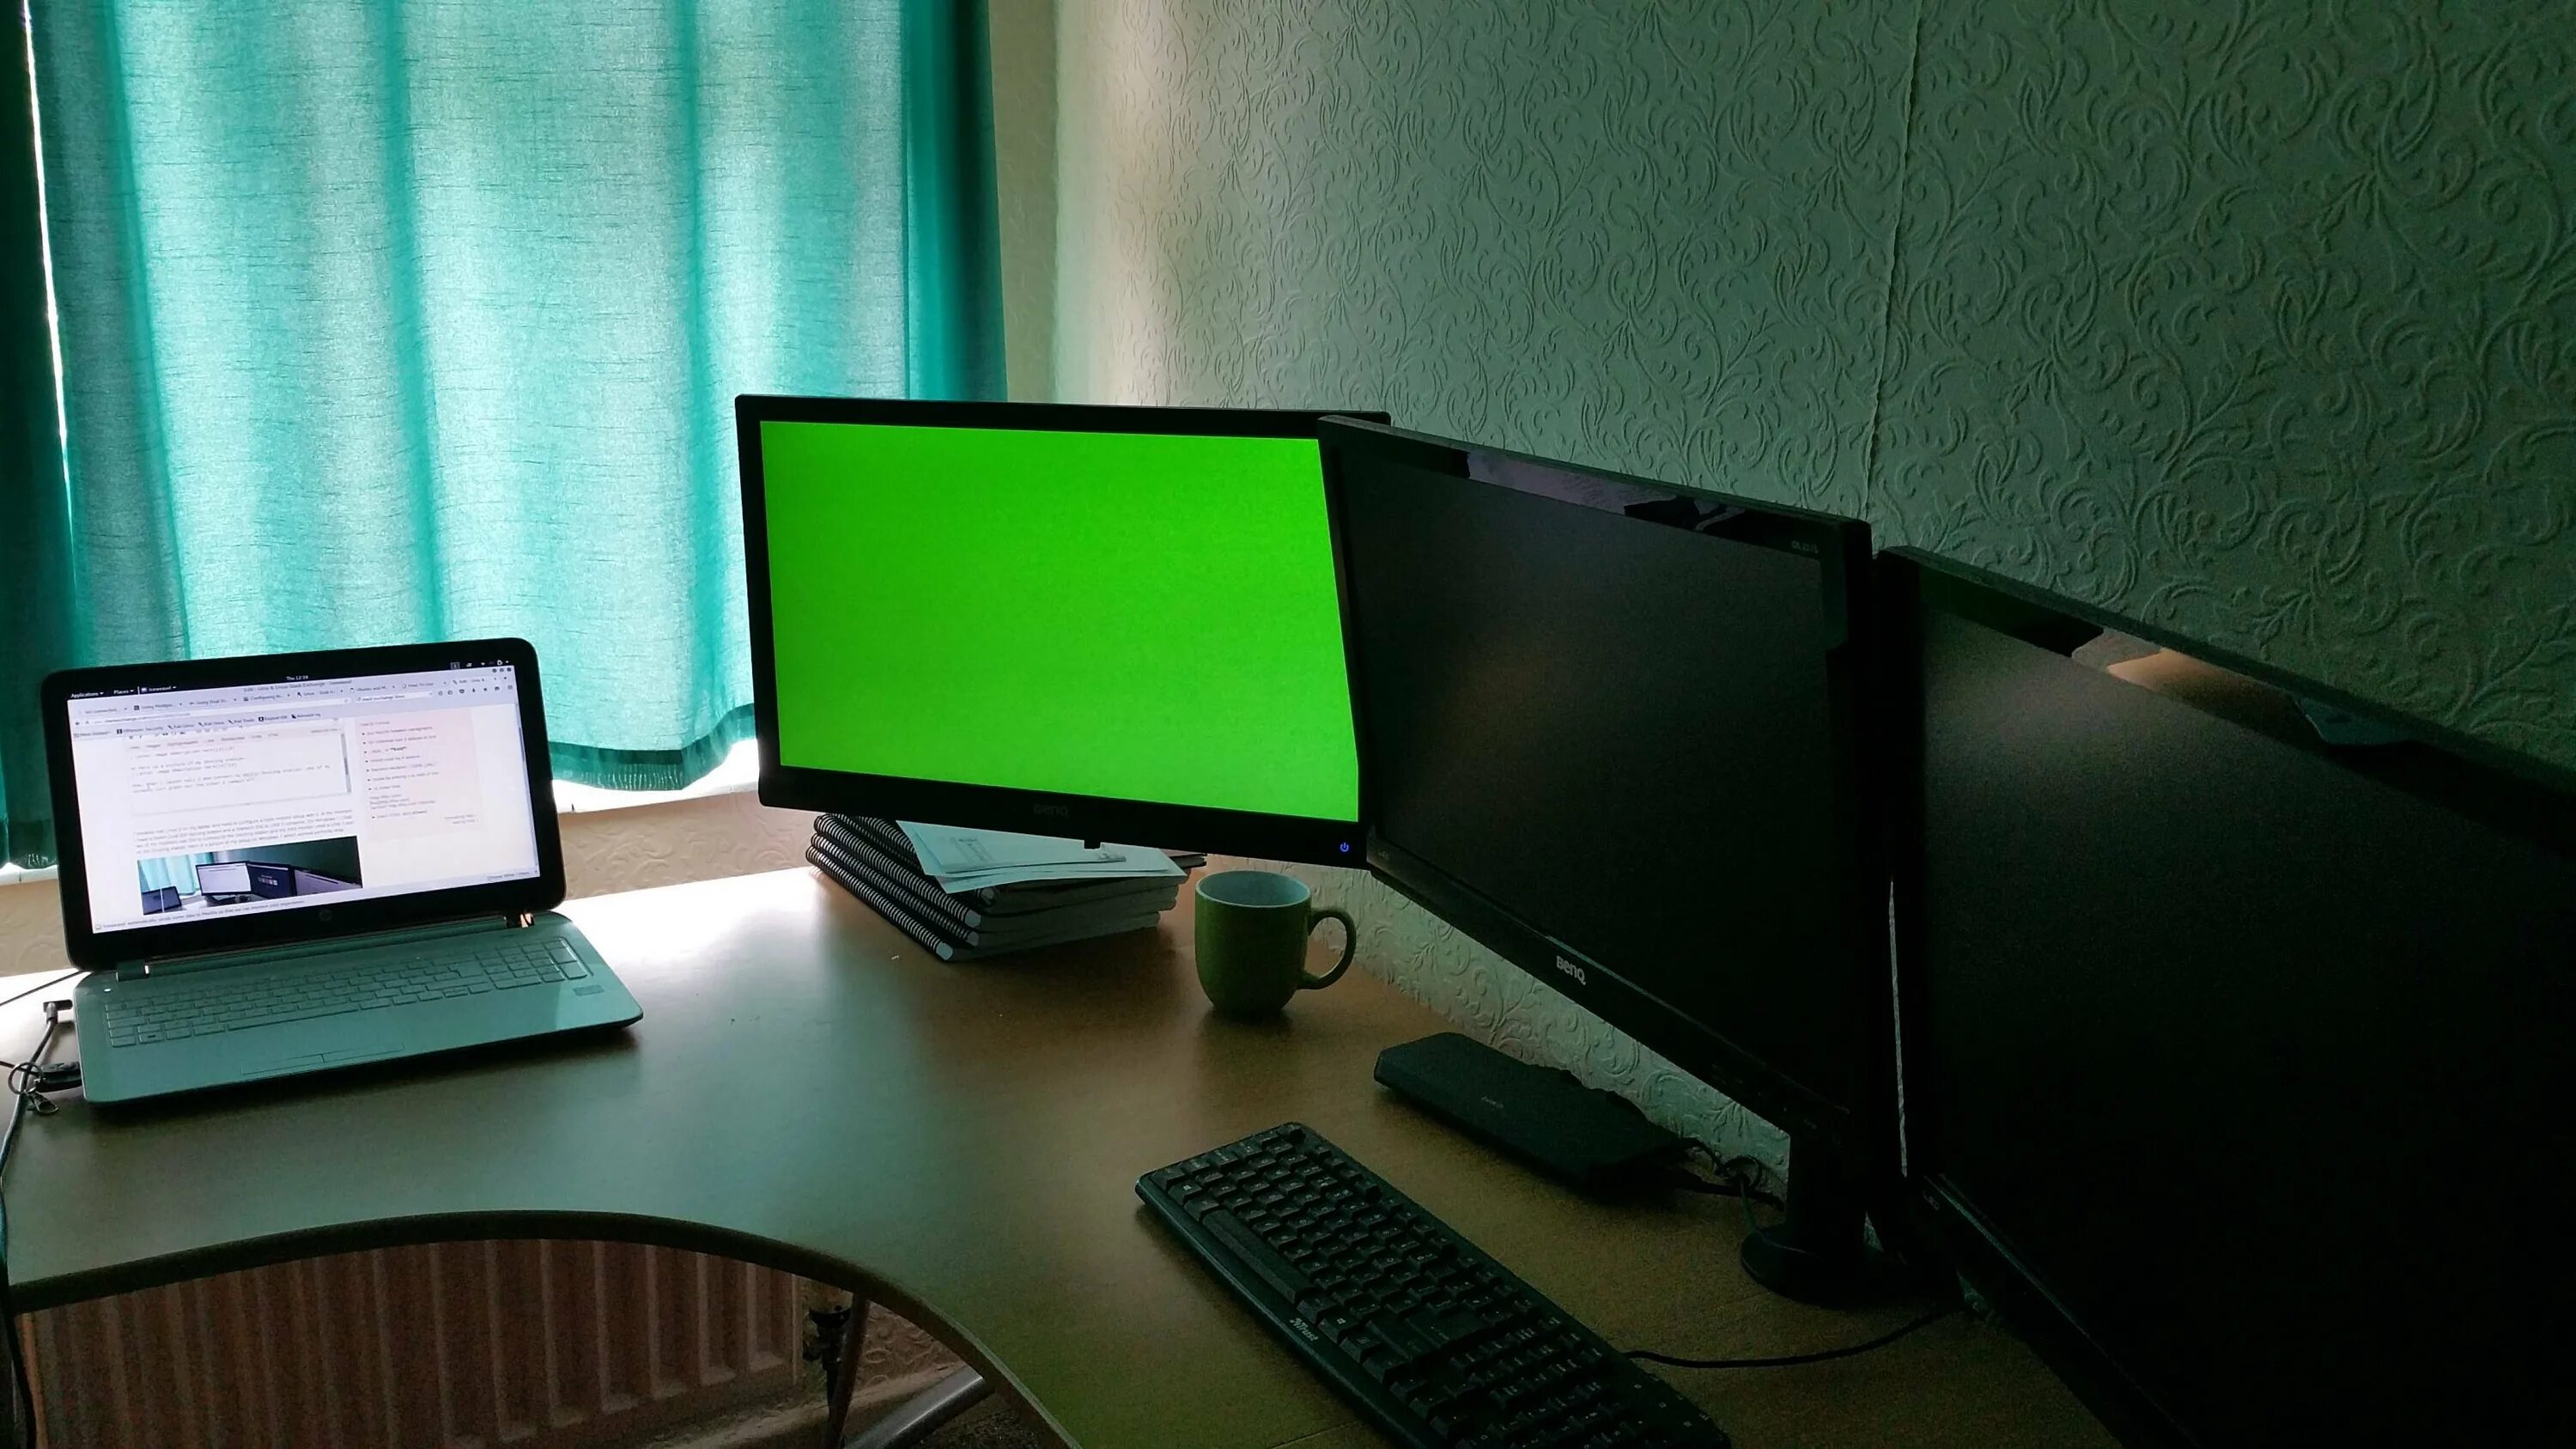 Разные обои на разных мониторах. Матовый экран компьютера. Зеленый монитор. 2 Монитора. Глянцевый и матовый монитор.